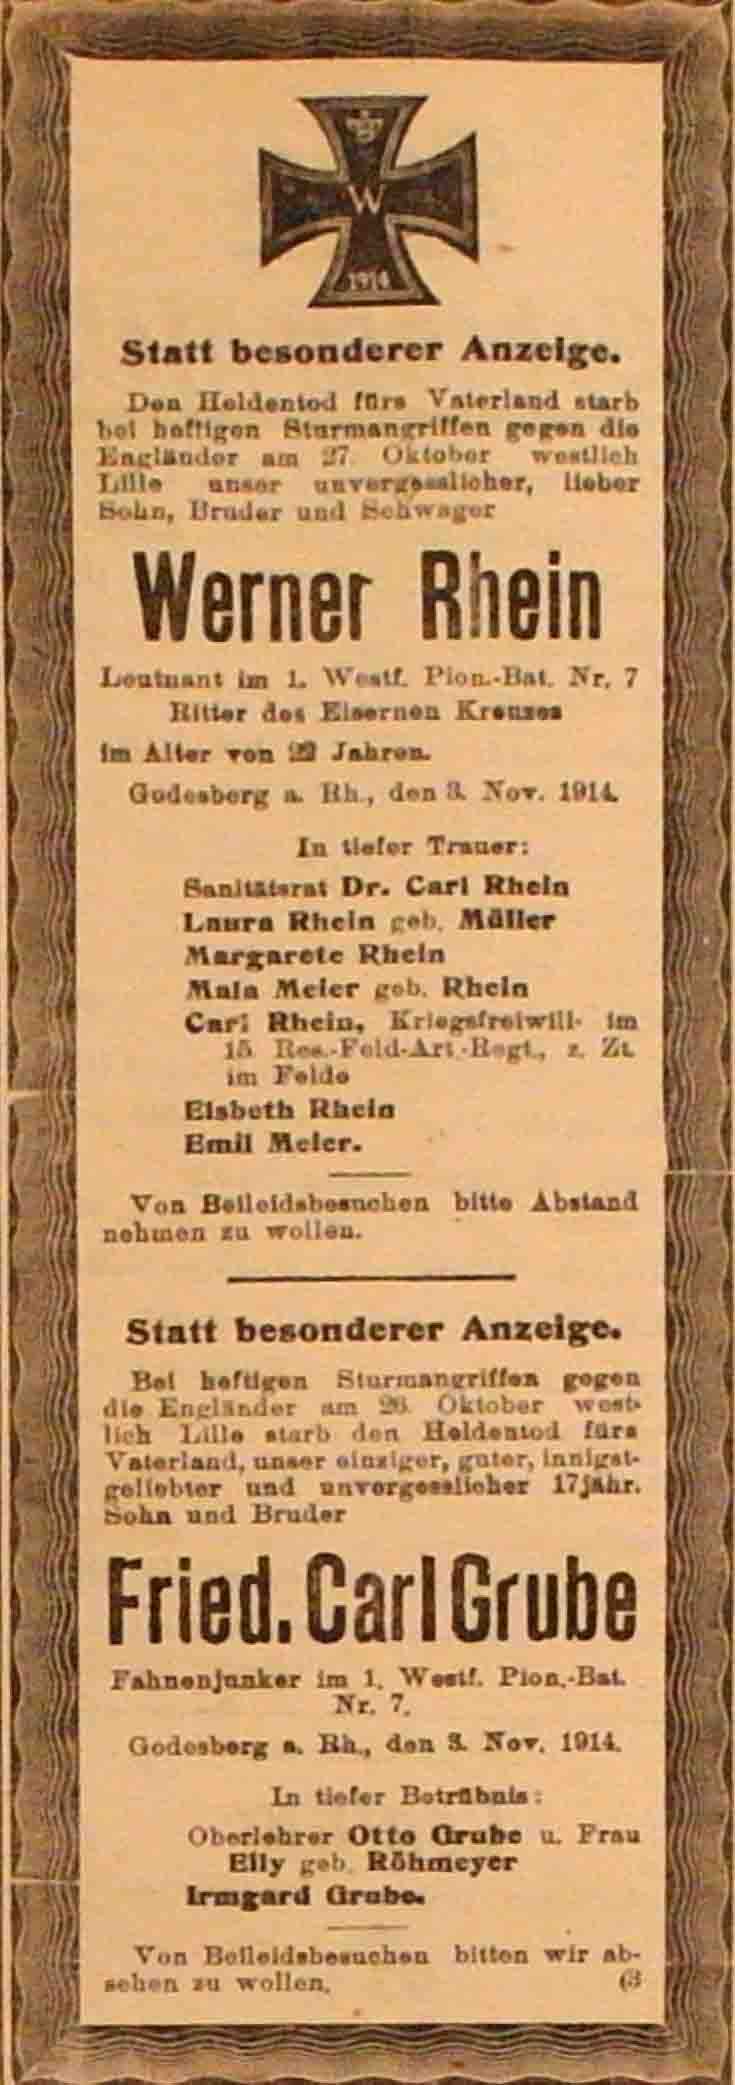 Anzeige im General-Anzeiger vom 4. November 1914